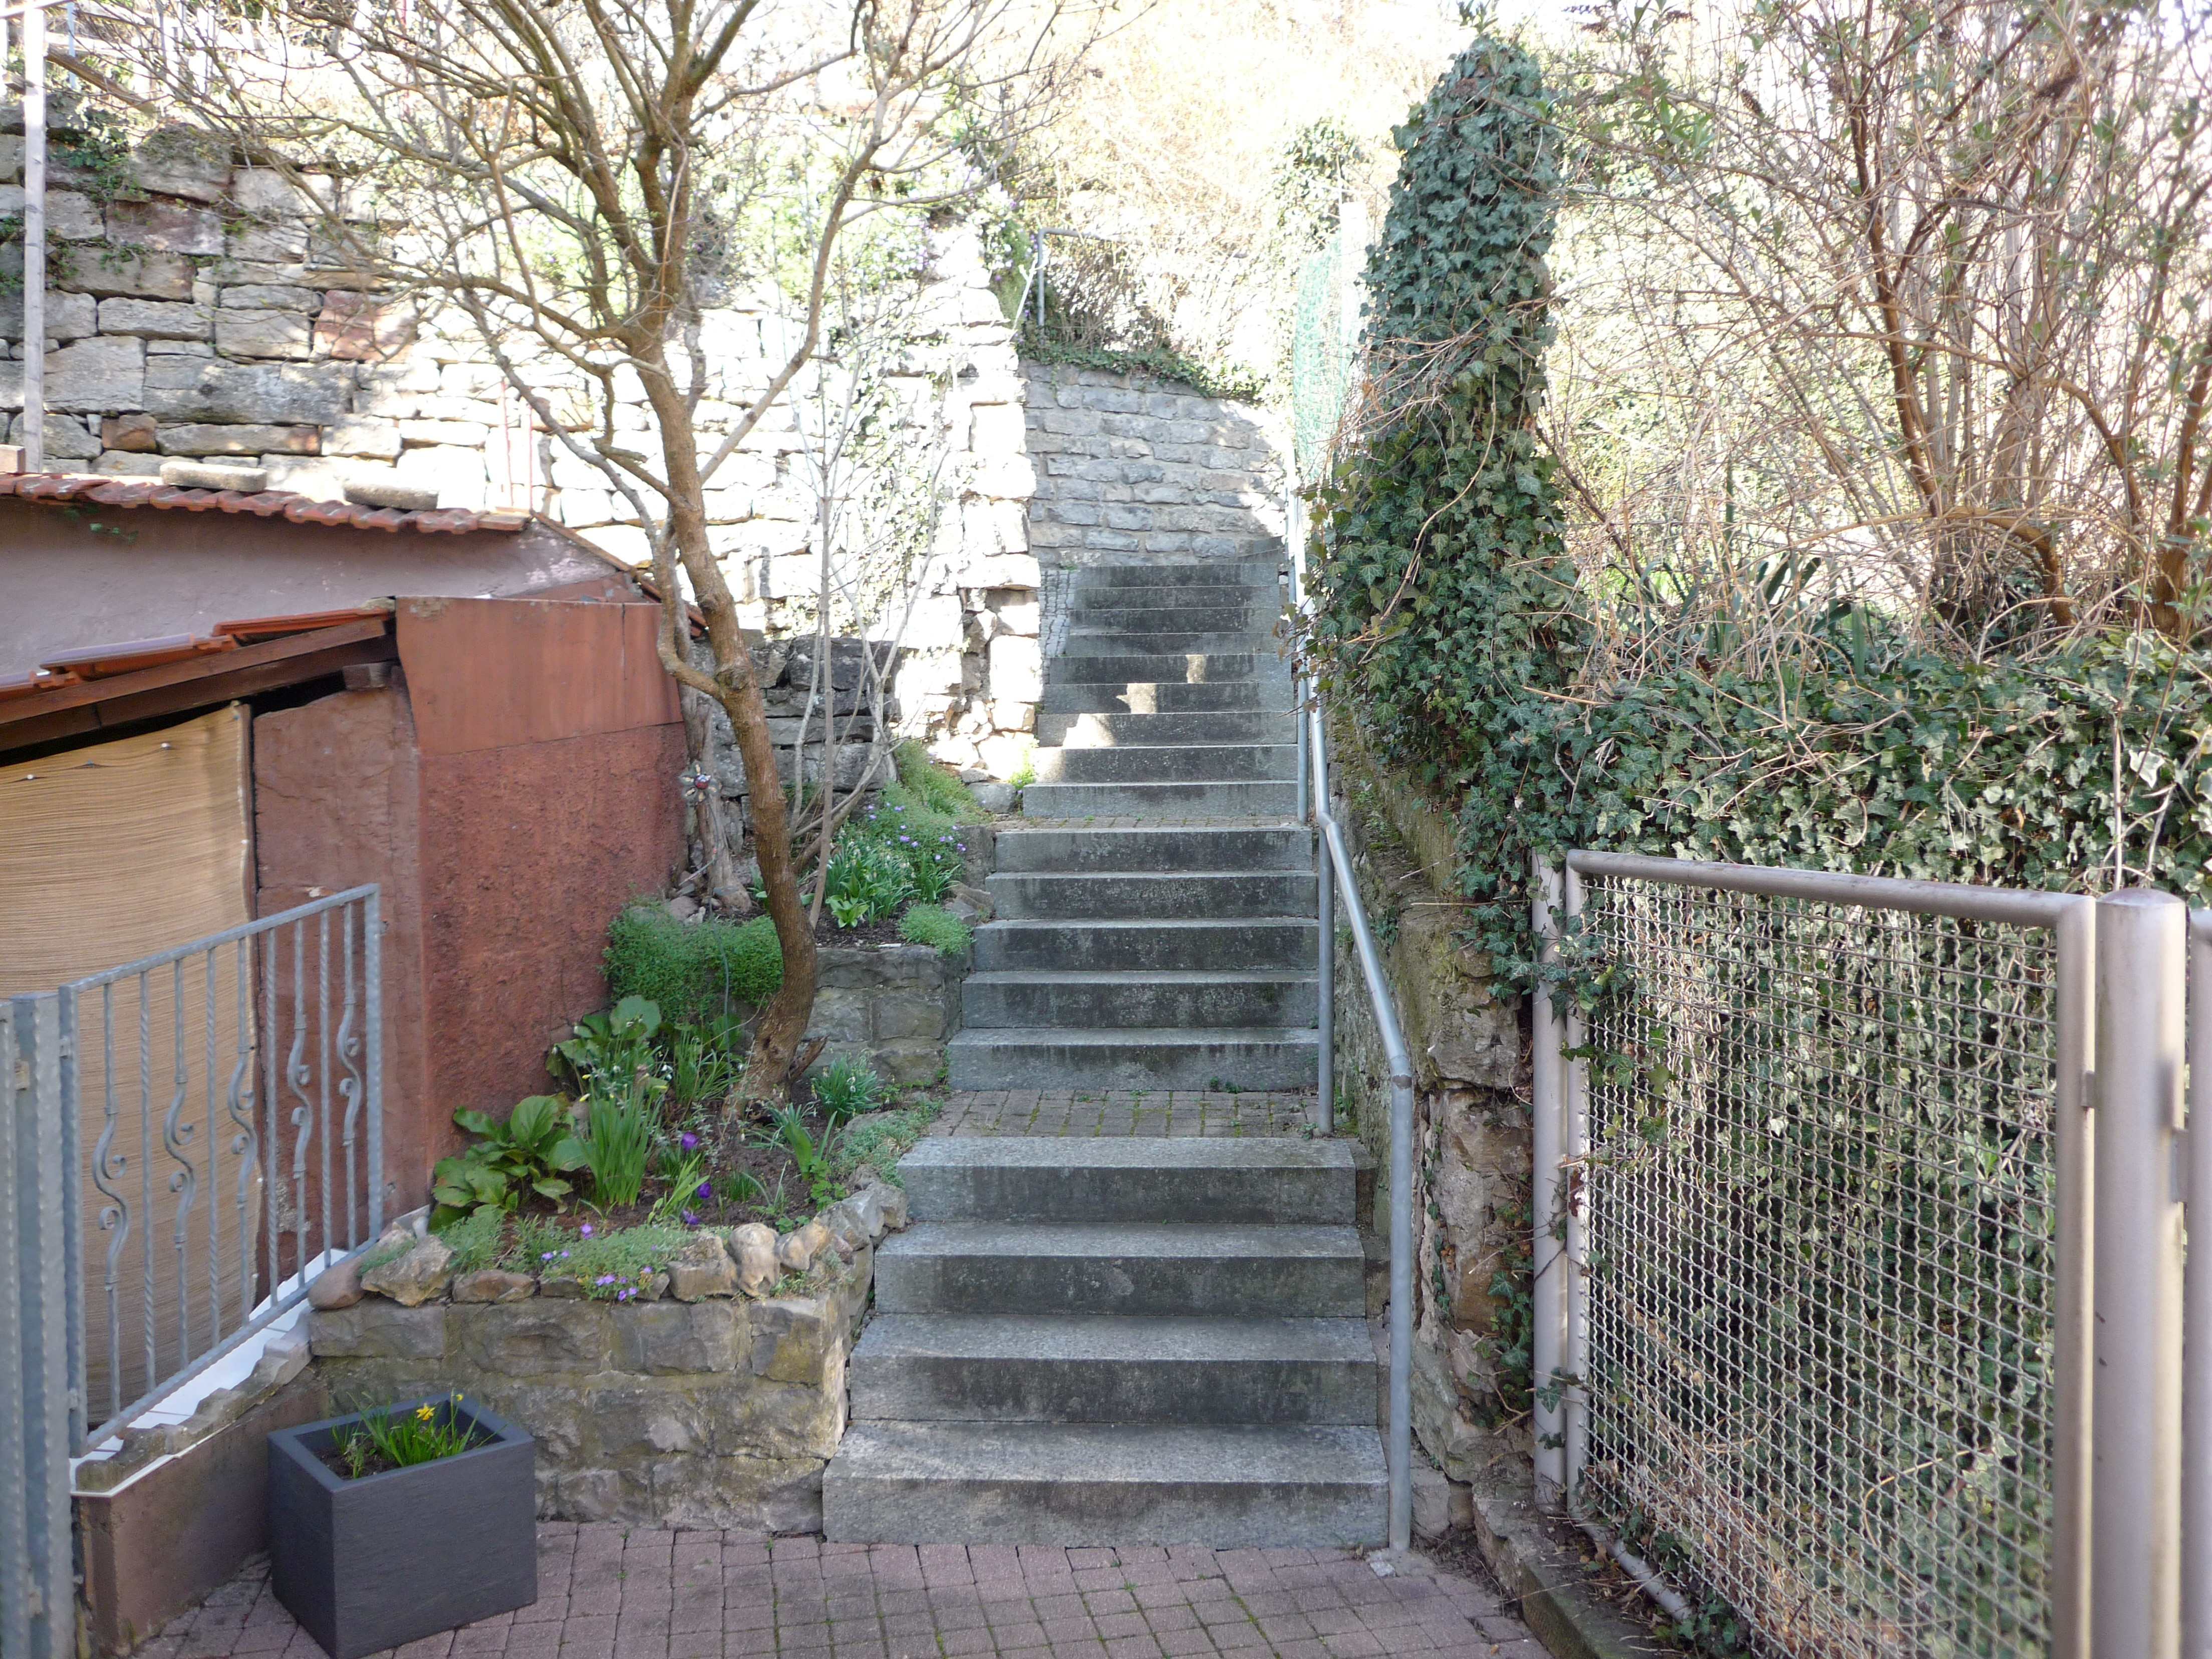 zu gehende Treppen in Lomersheim